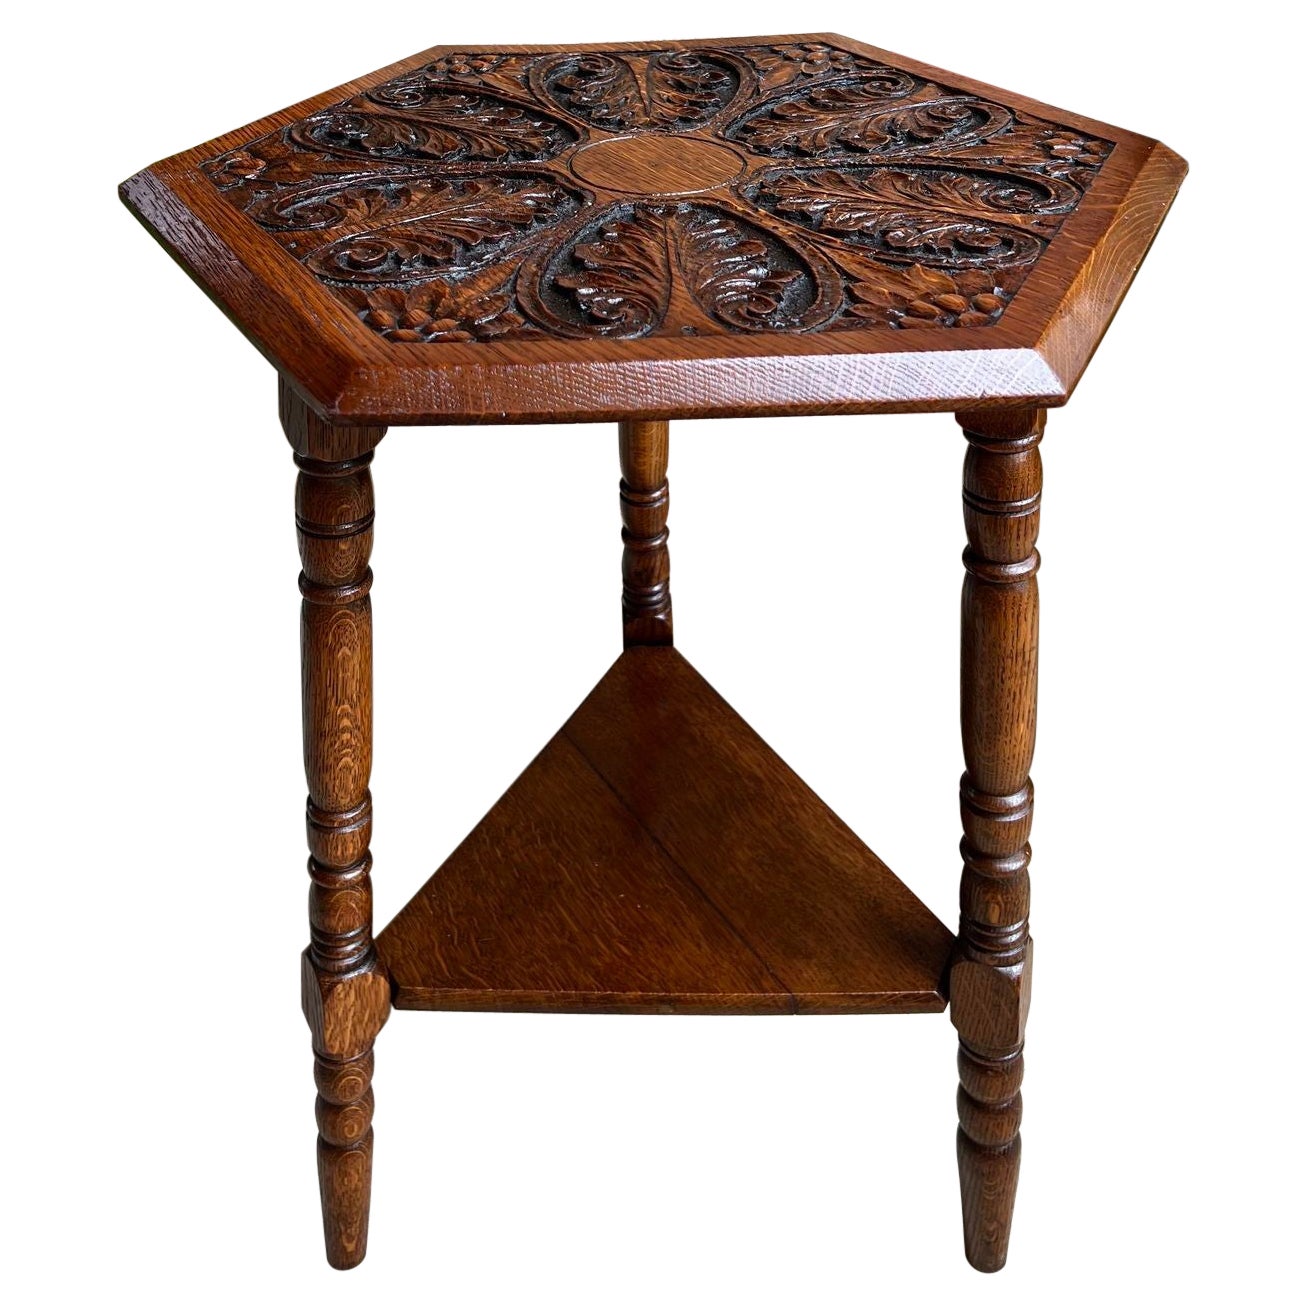 Ancienne table de criquet anglaise hexagonale sculptée en chêne, table d'appoint Arts and Crafts